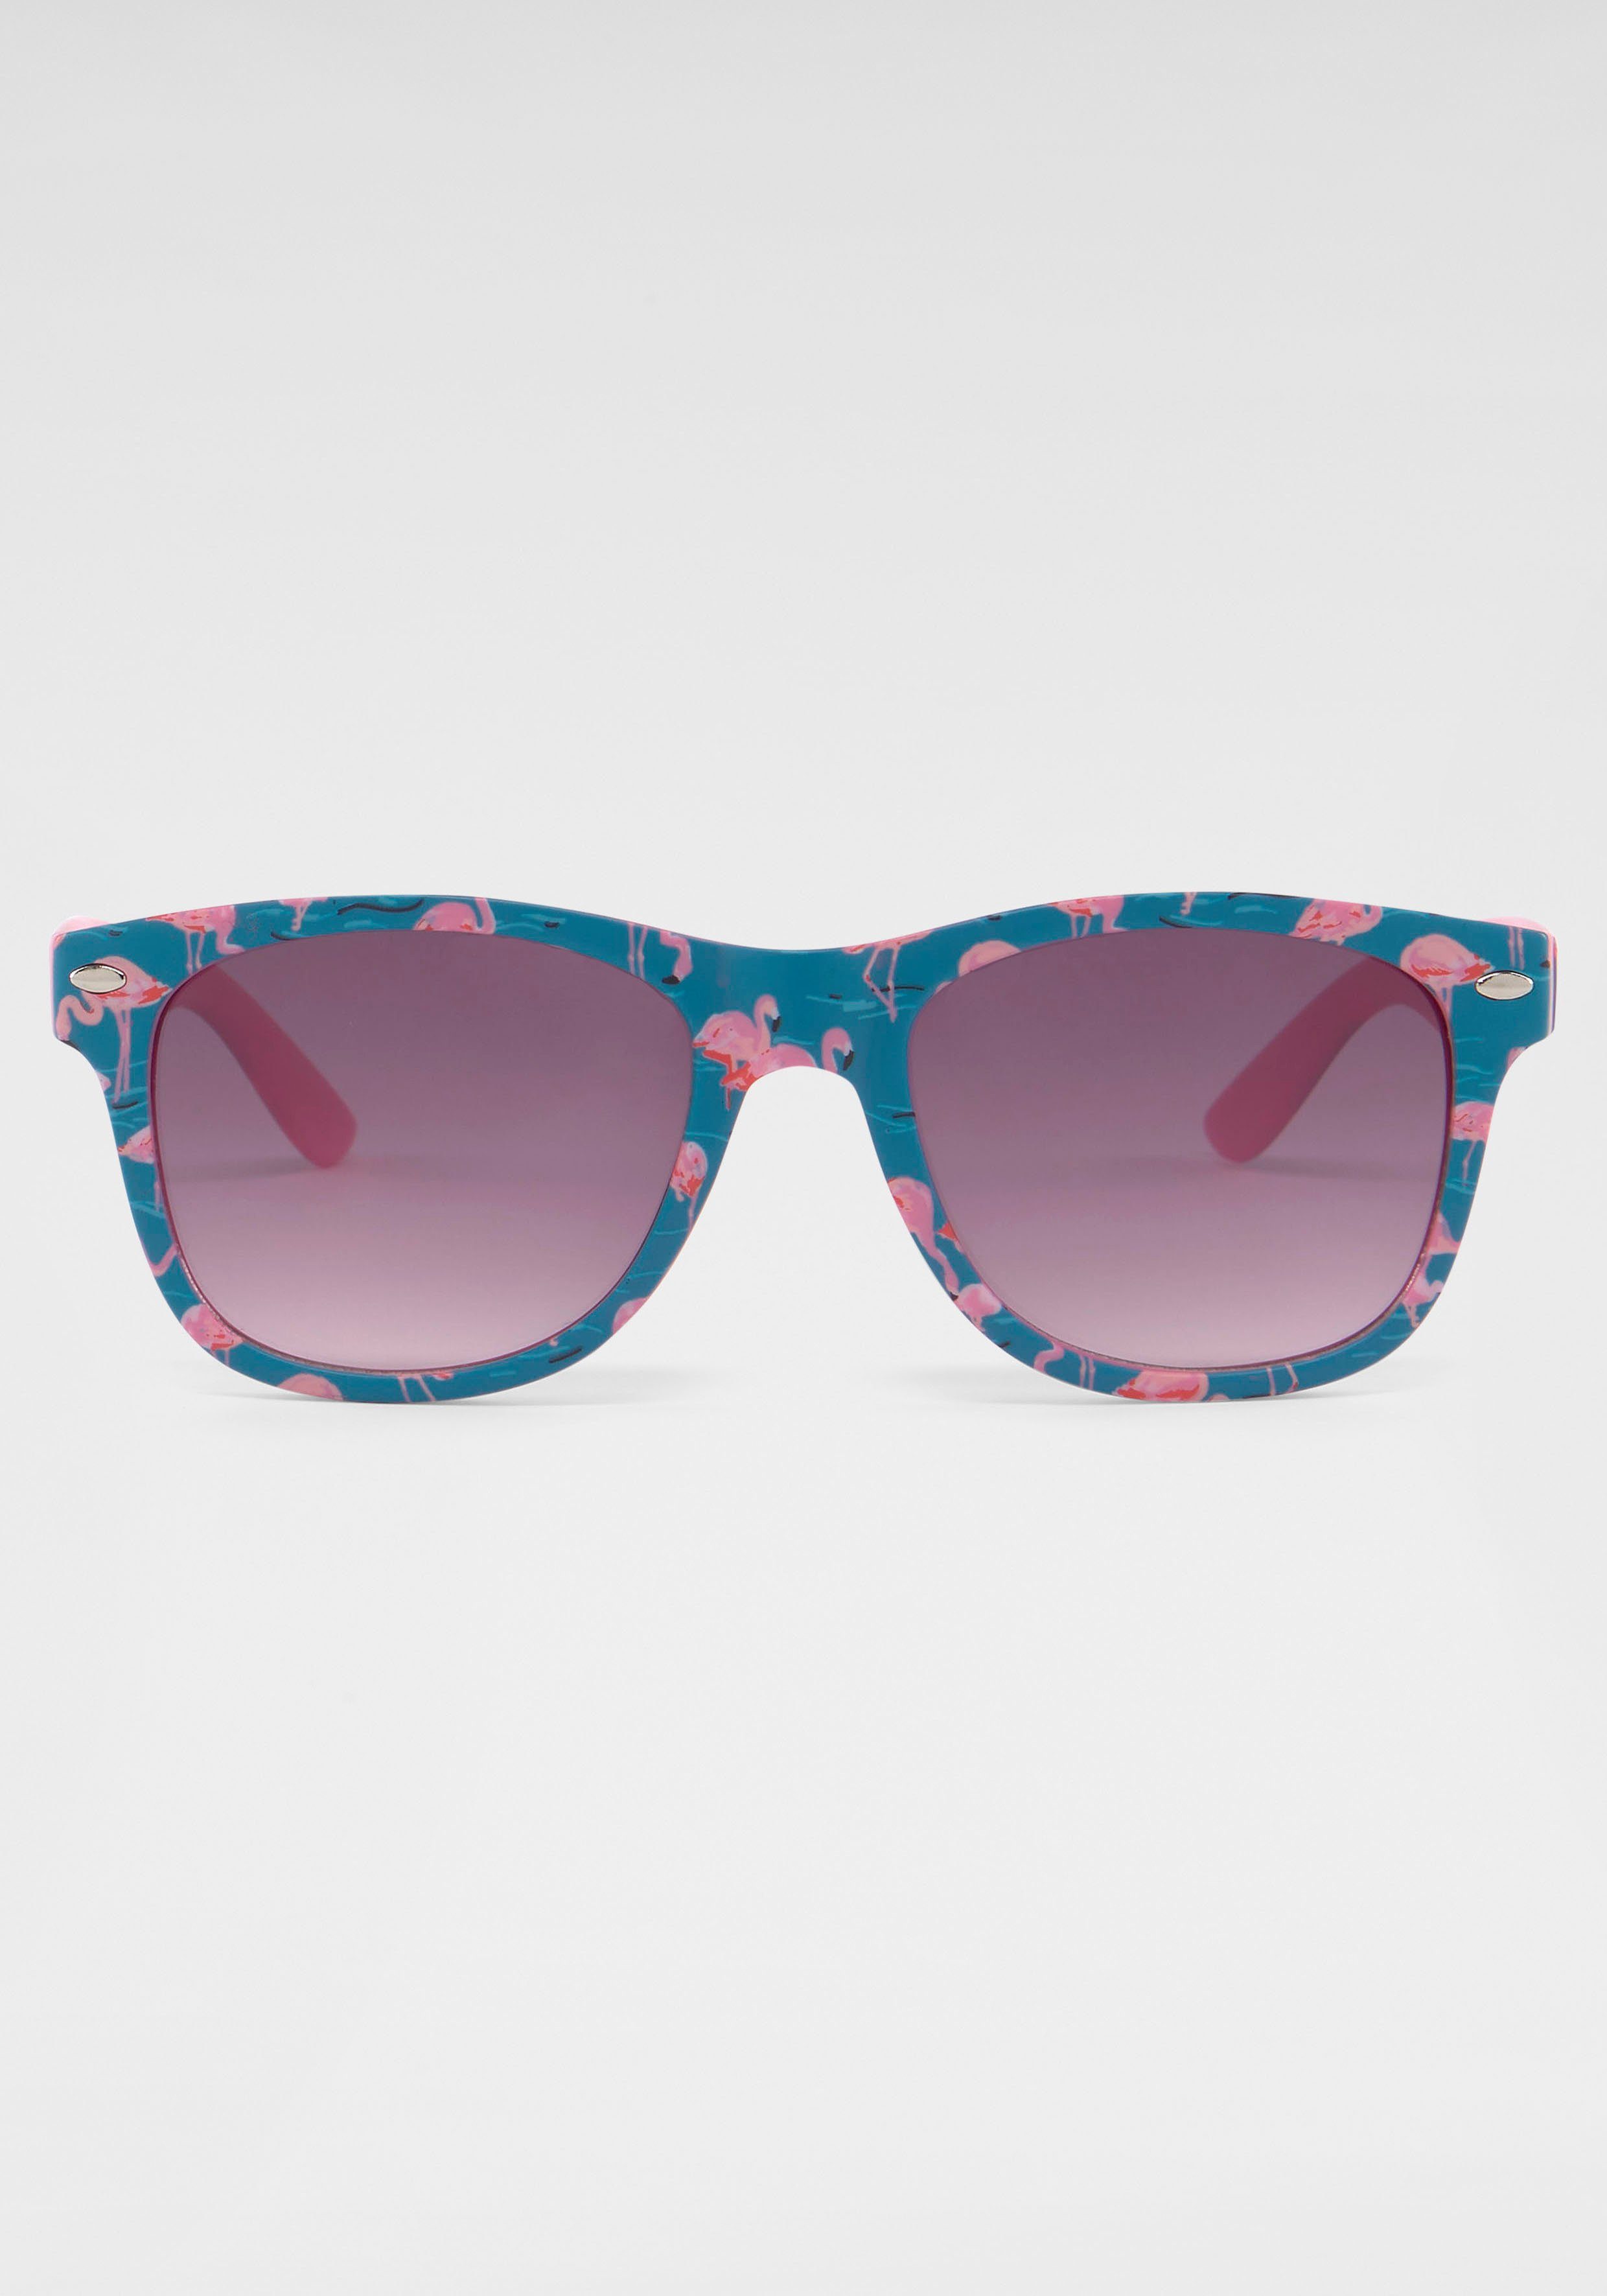 Eyewear mit Sonnenbrille PRIMETTA Flamingos